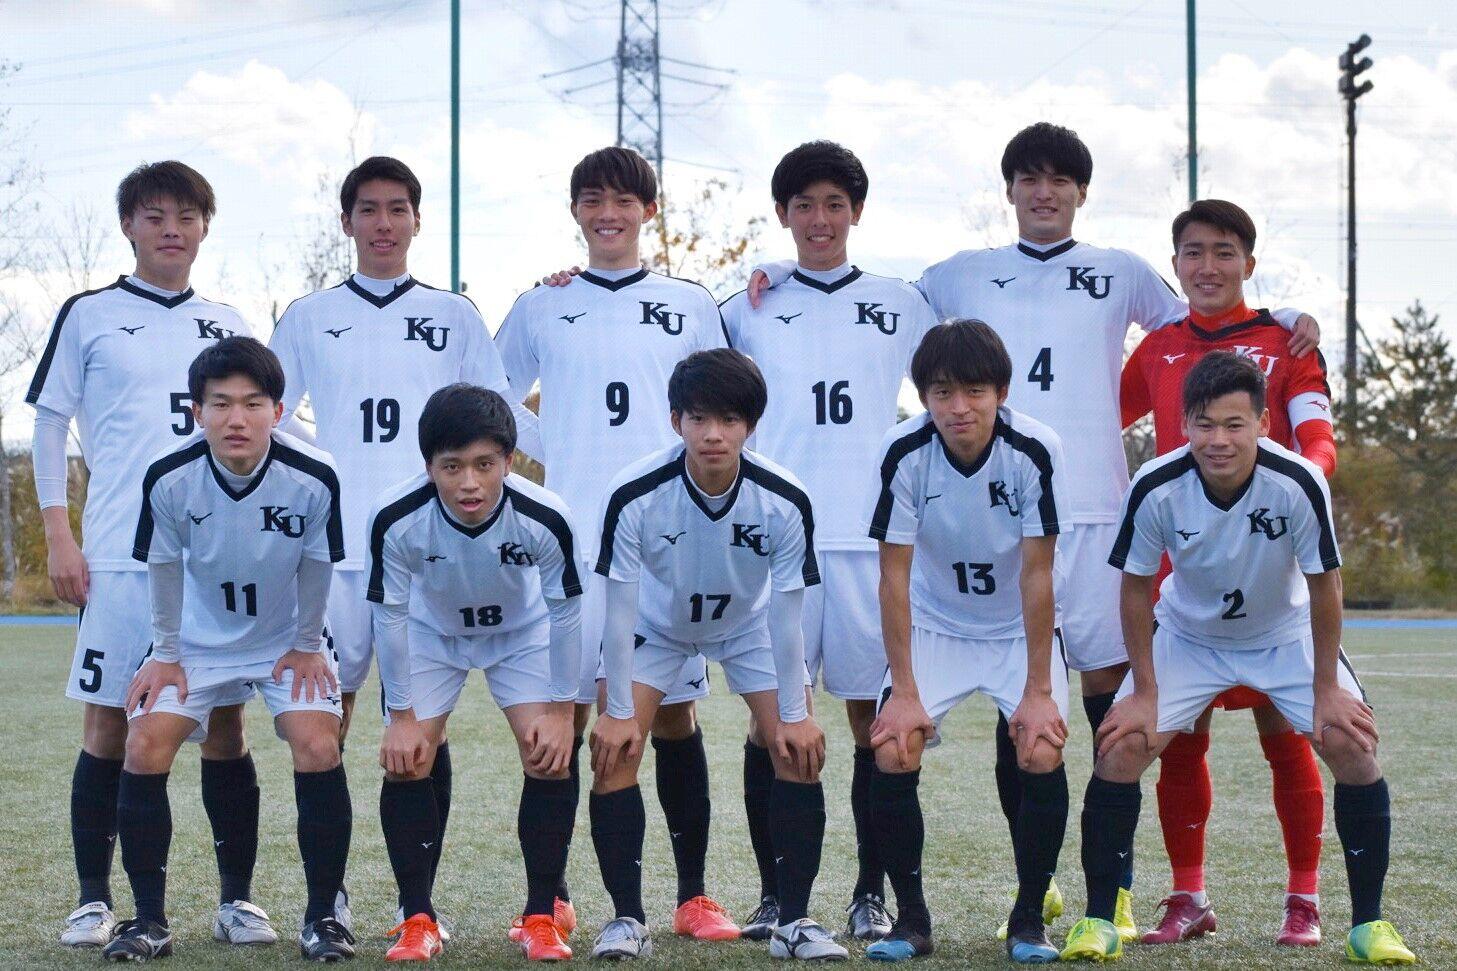 神奈川大学サッカー部 Iリーグ 試合情報 アットホームカップ2019 第17回インディペンデンスリーグ全日本大学サッカーフェスティバル